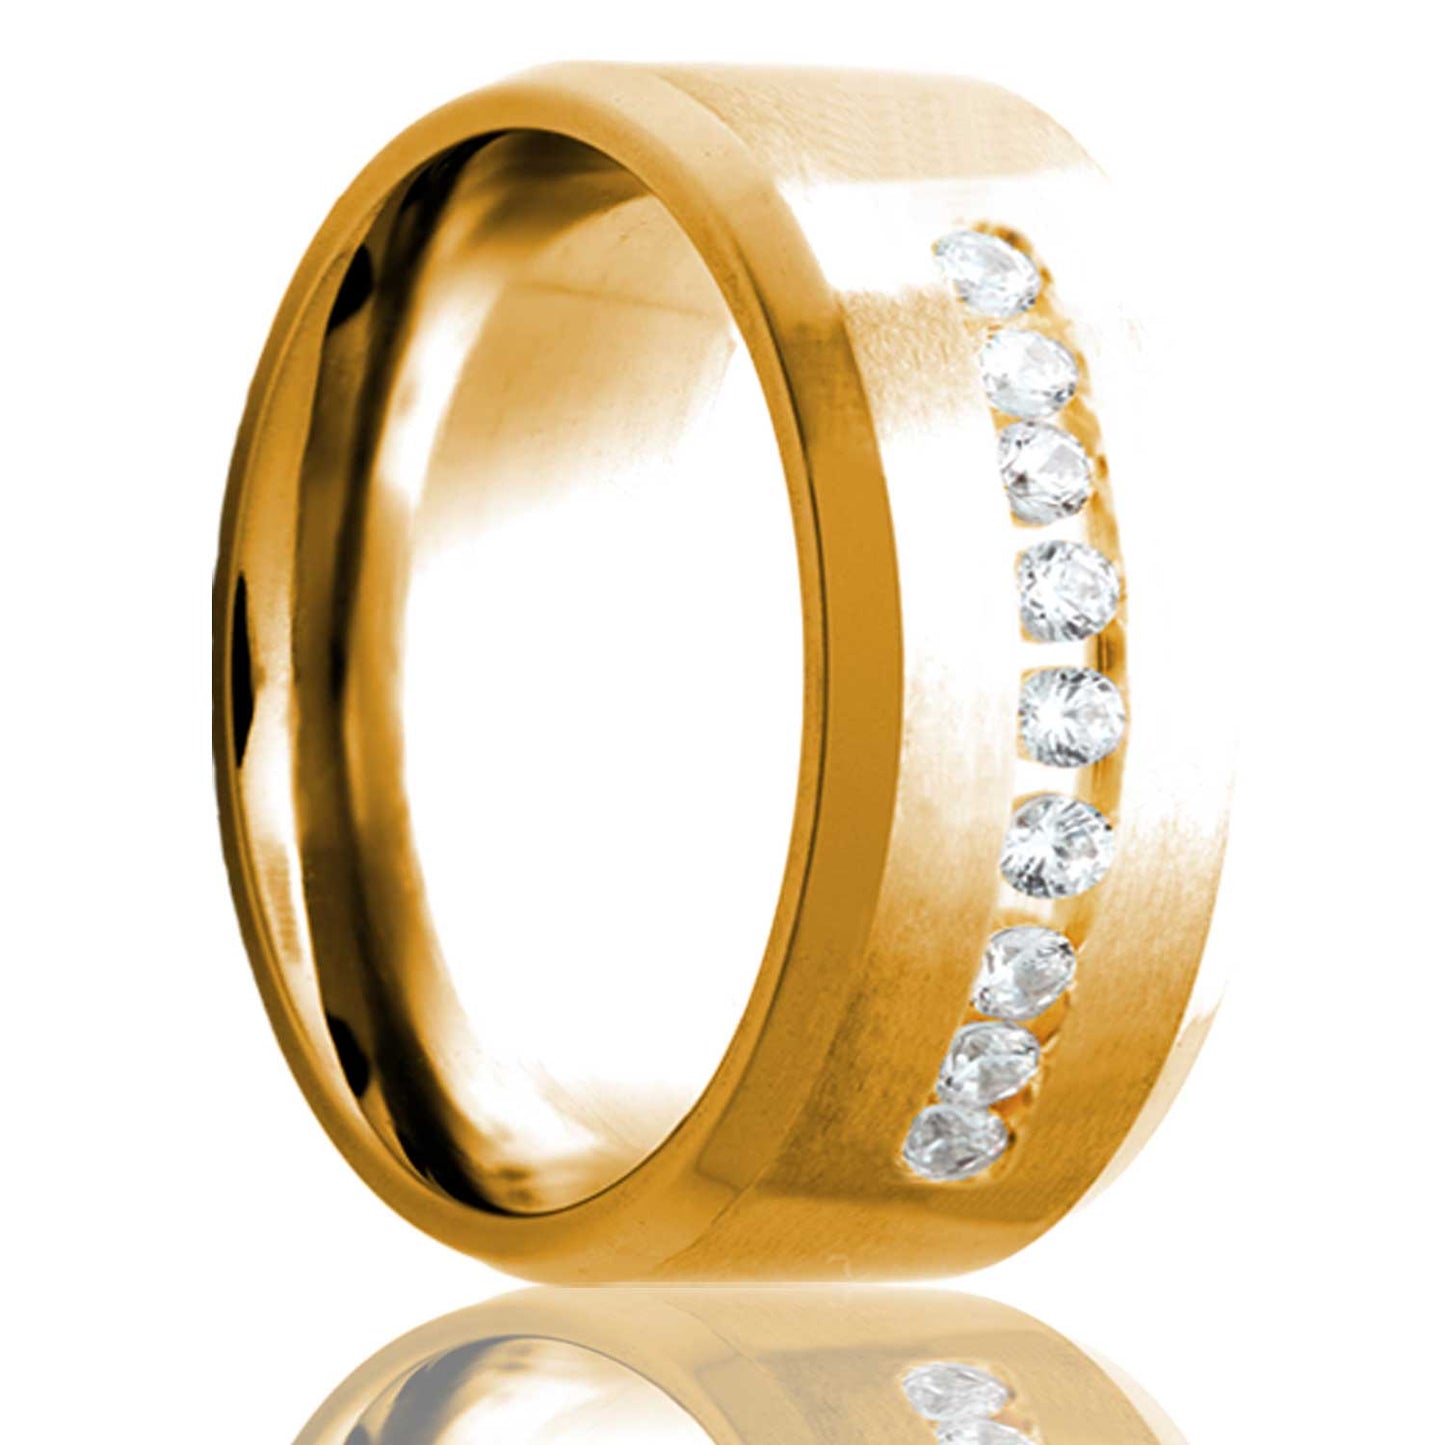 Satin Finish 14k Gold Wedding Band with Beveled Edges & Nine Diamonds